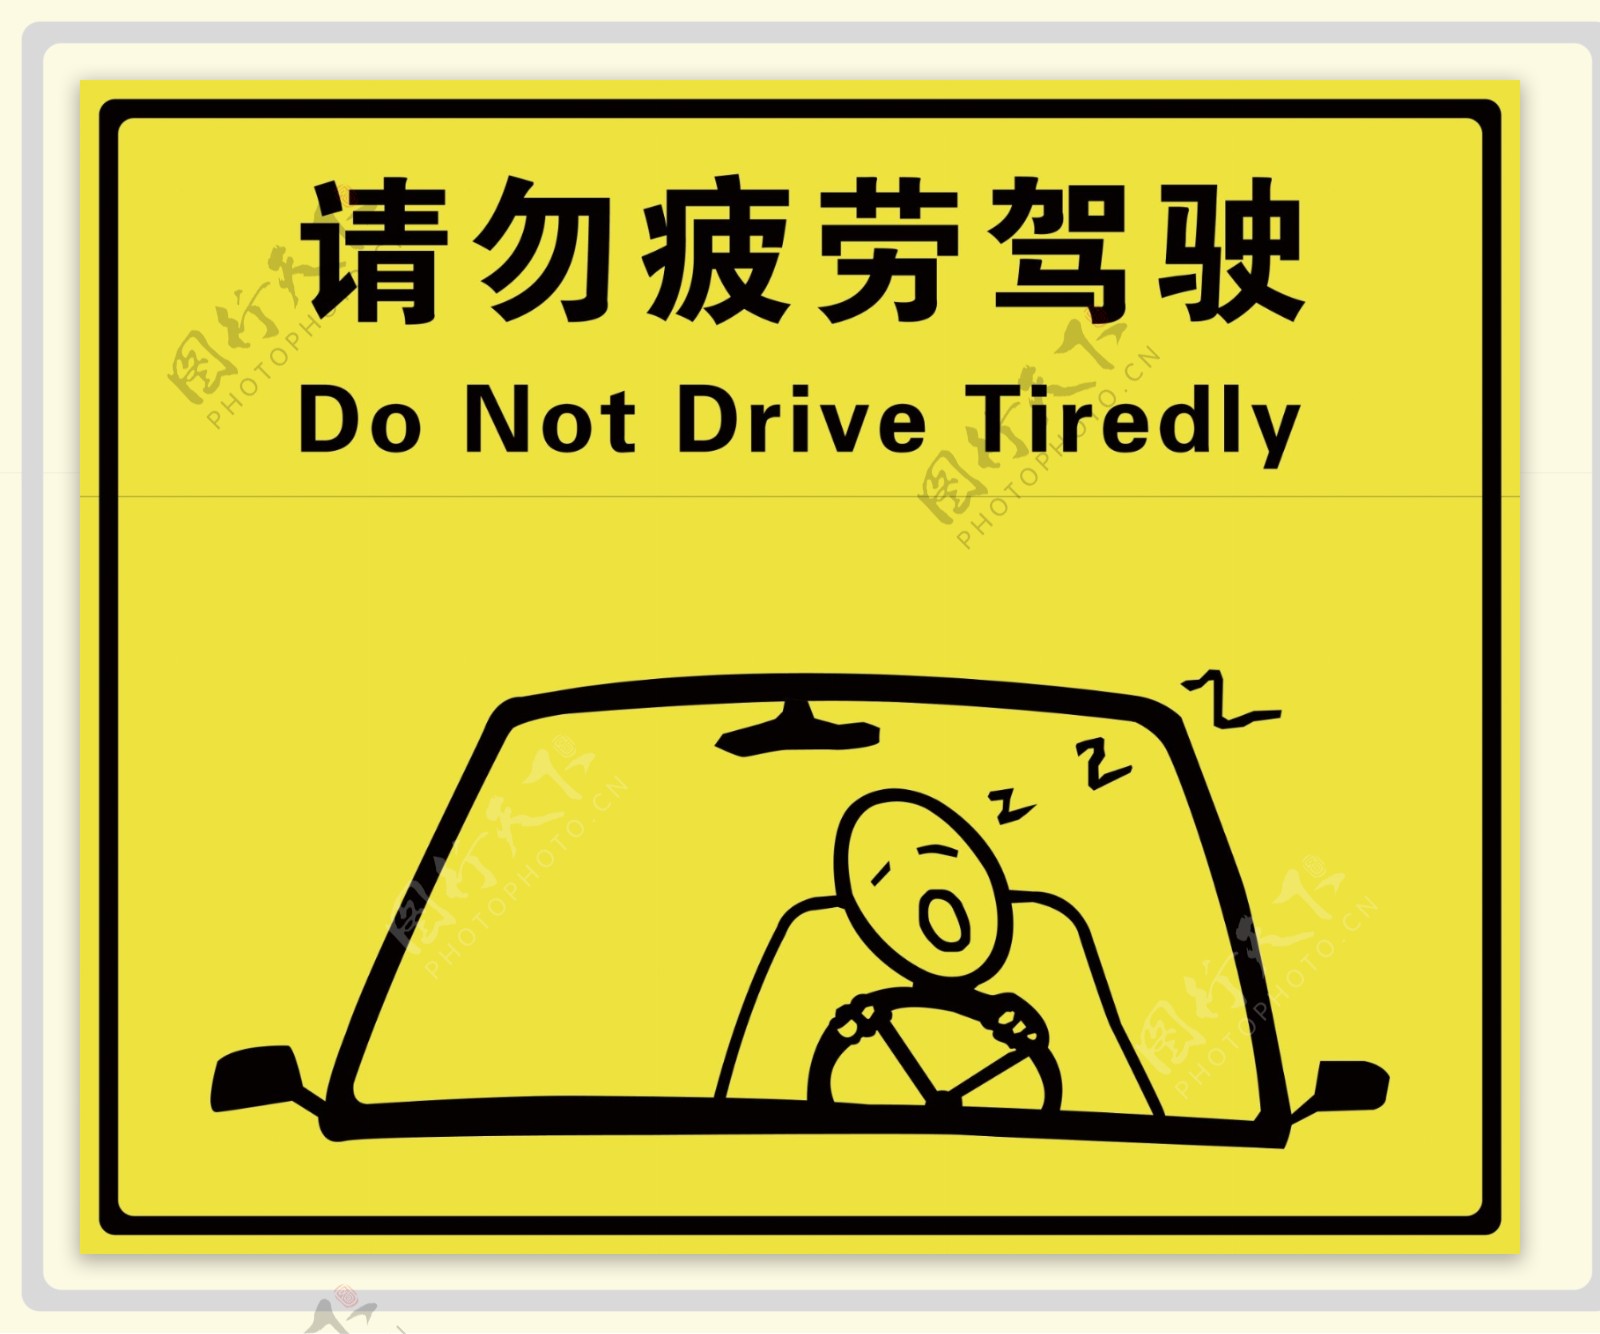 请勿疲劳驾驶图片